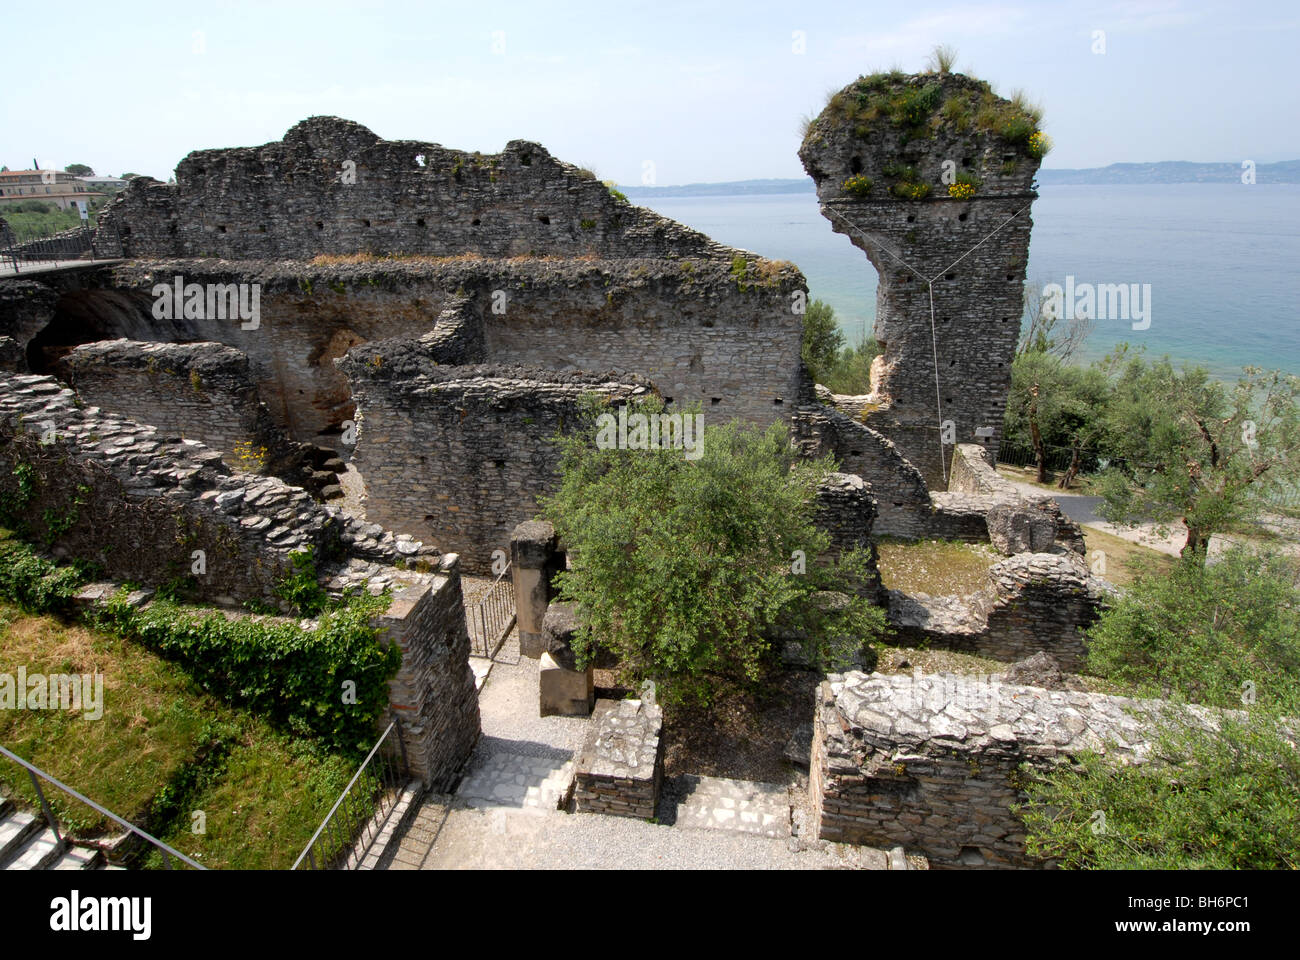 Ruines romaines de Sirmione, Lac de Garde, Italie Banque D'Images